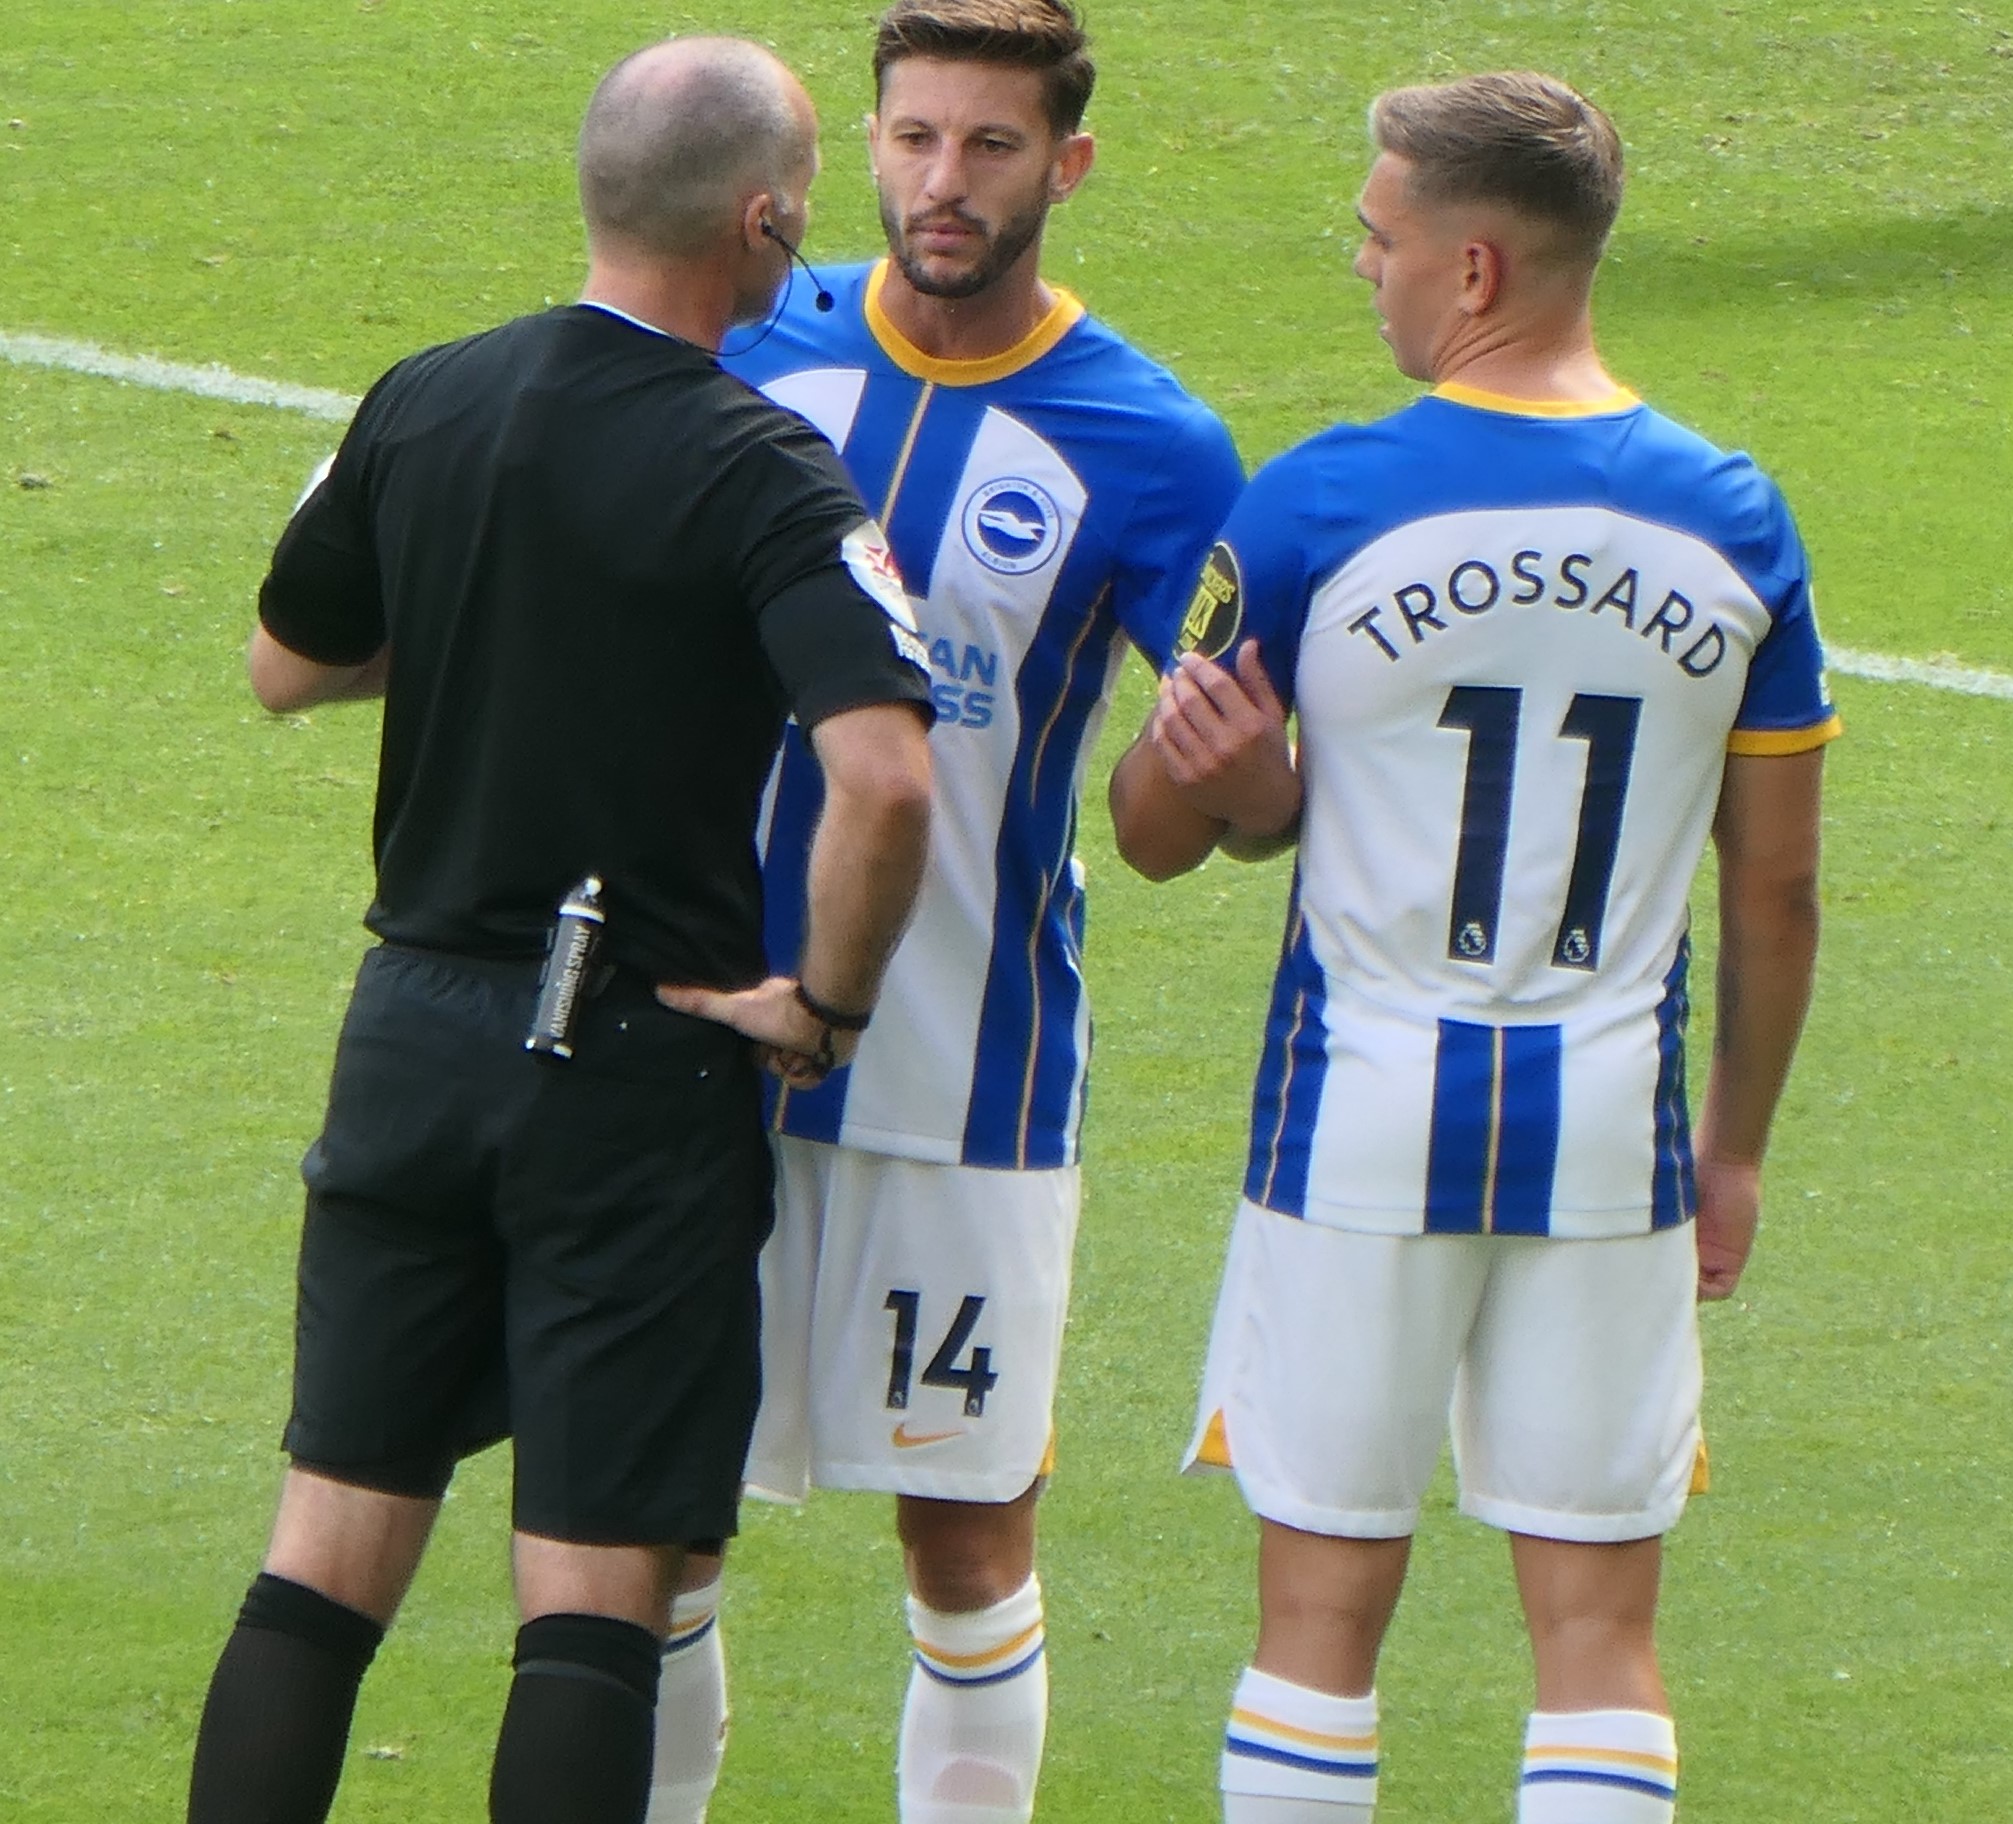 Brighton players around a referee